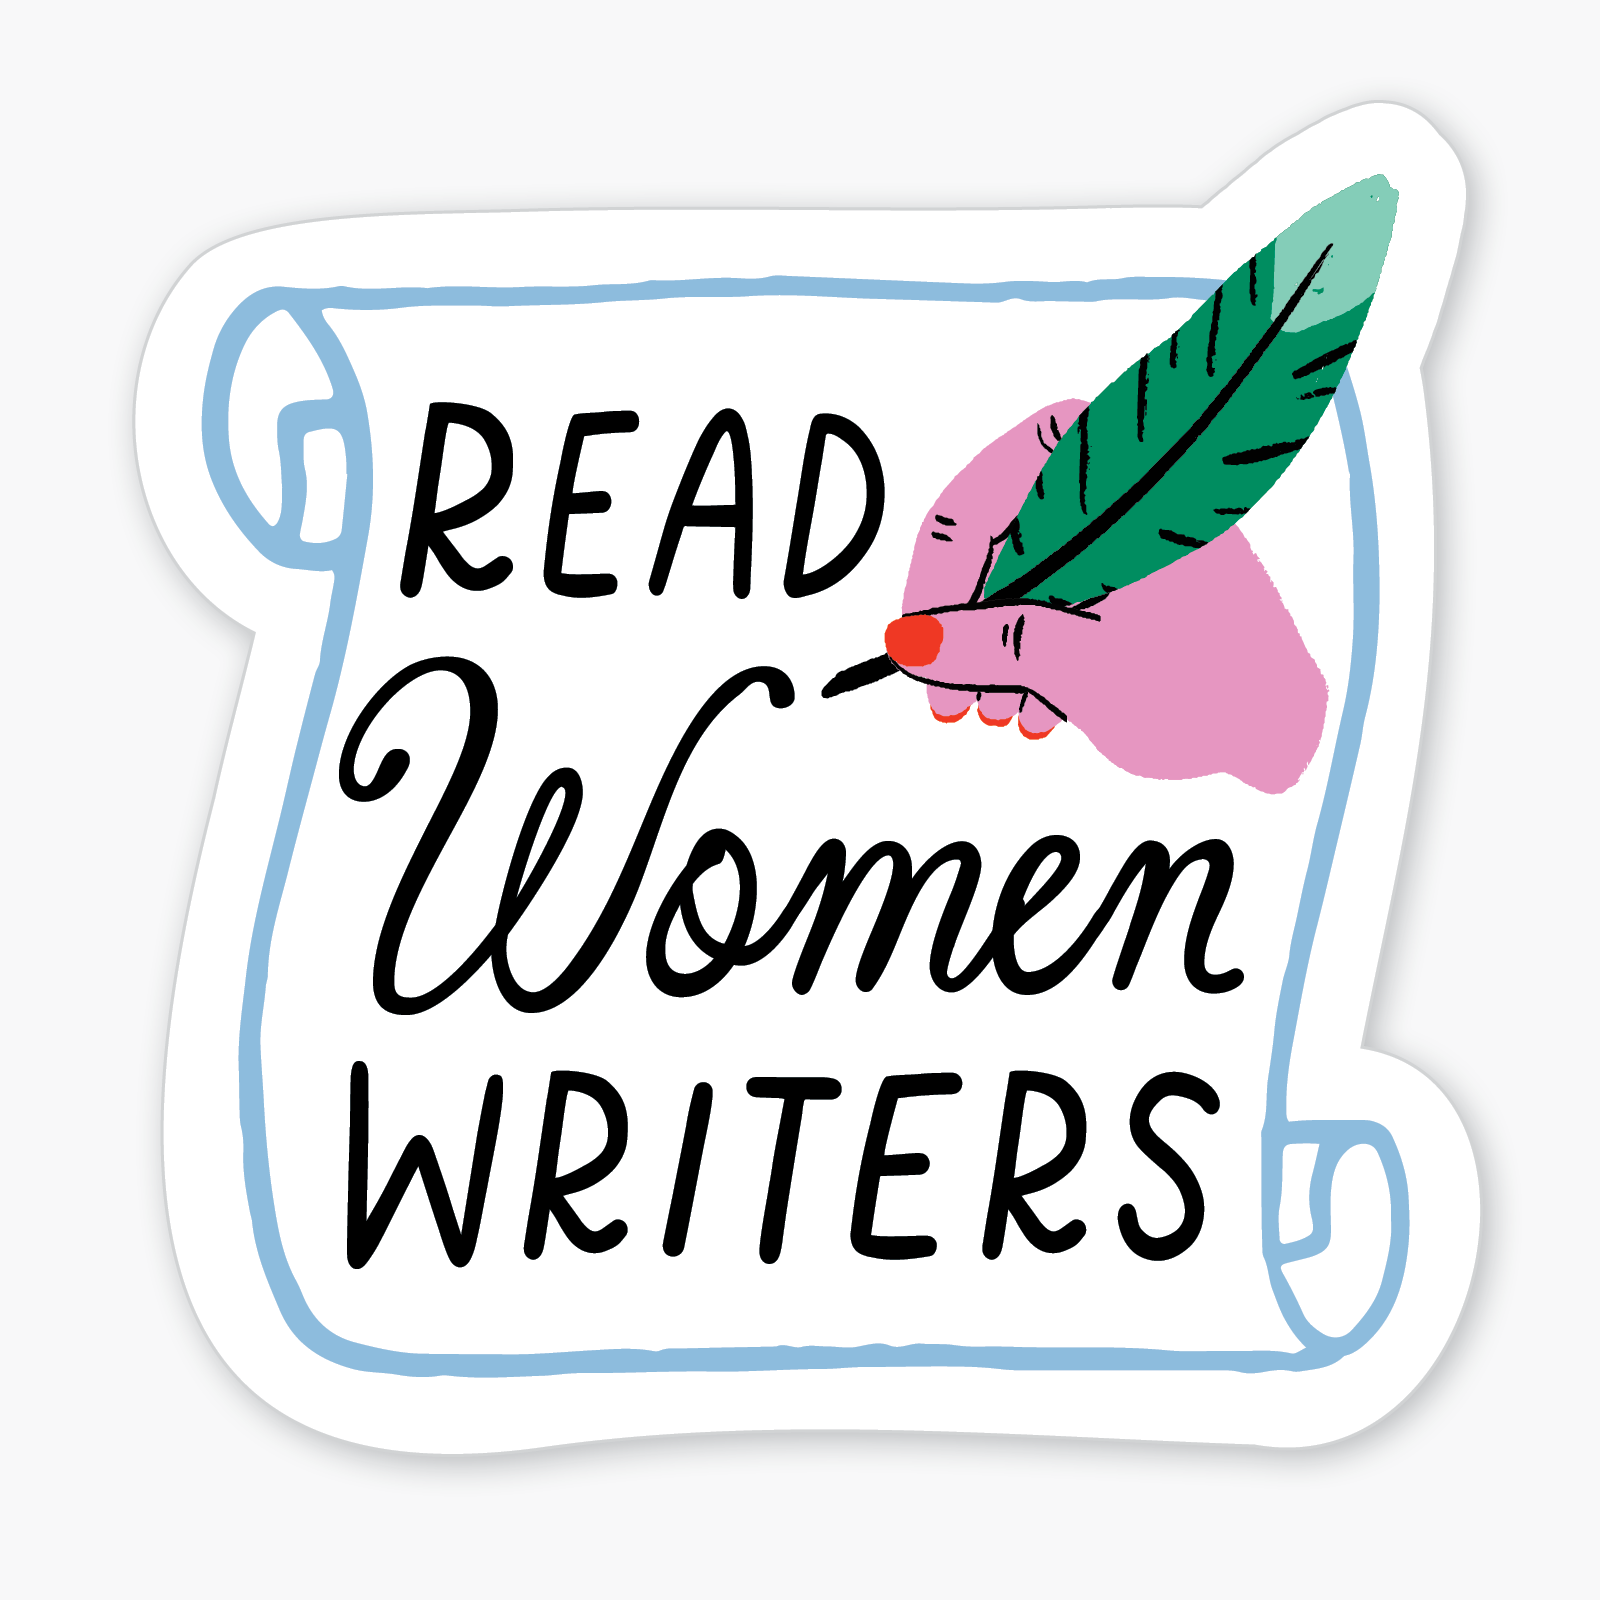 "Read Women Writers" Sticker